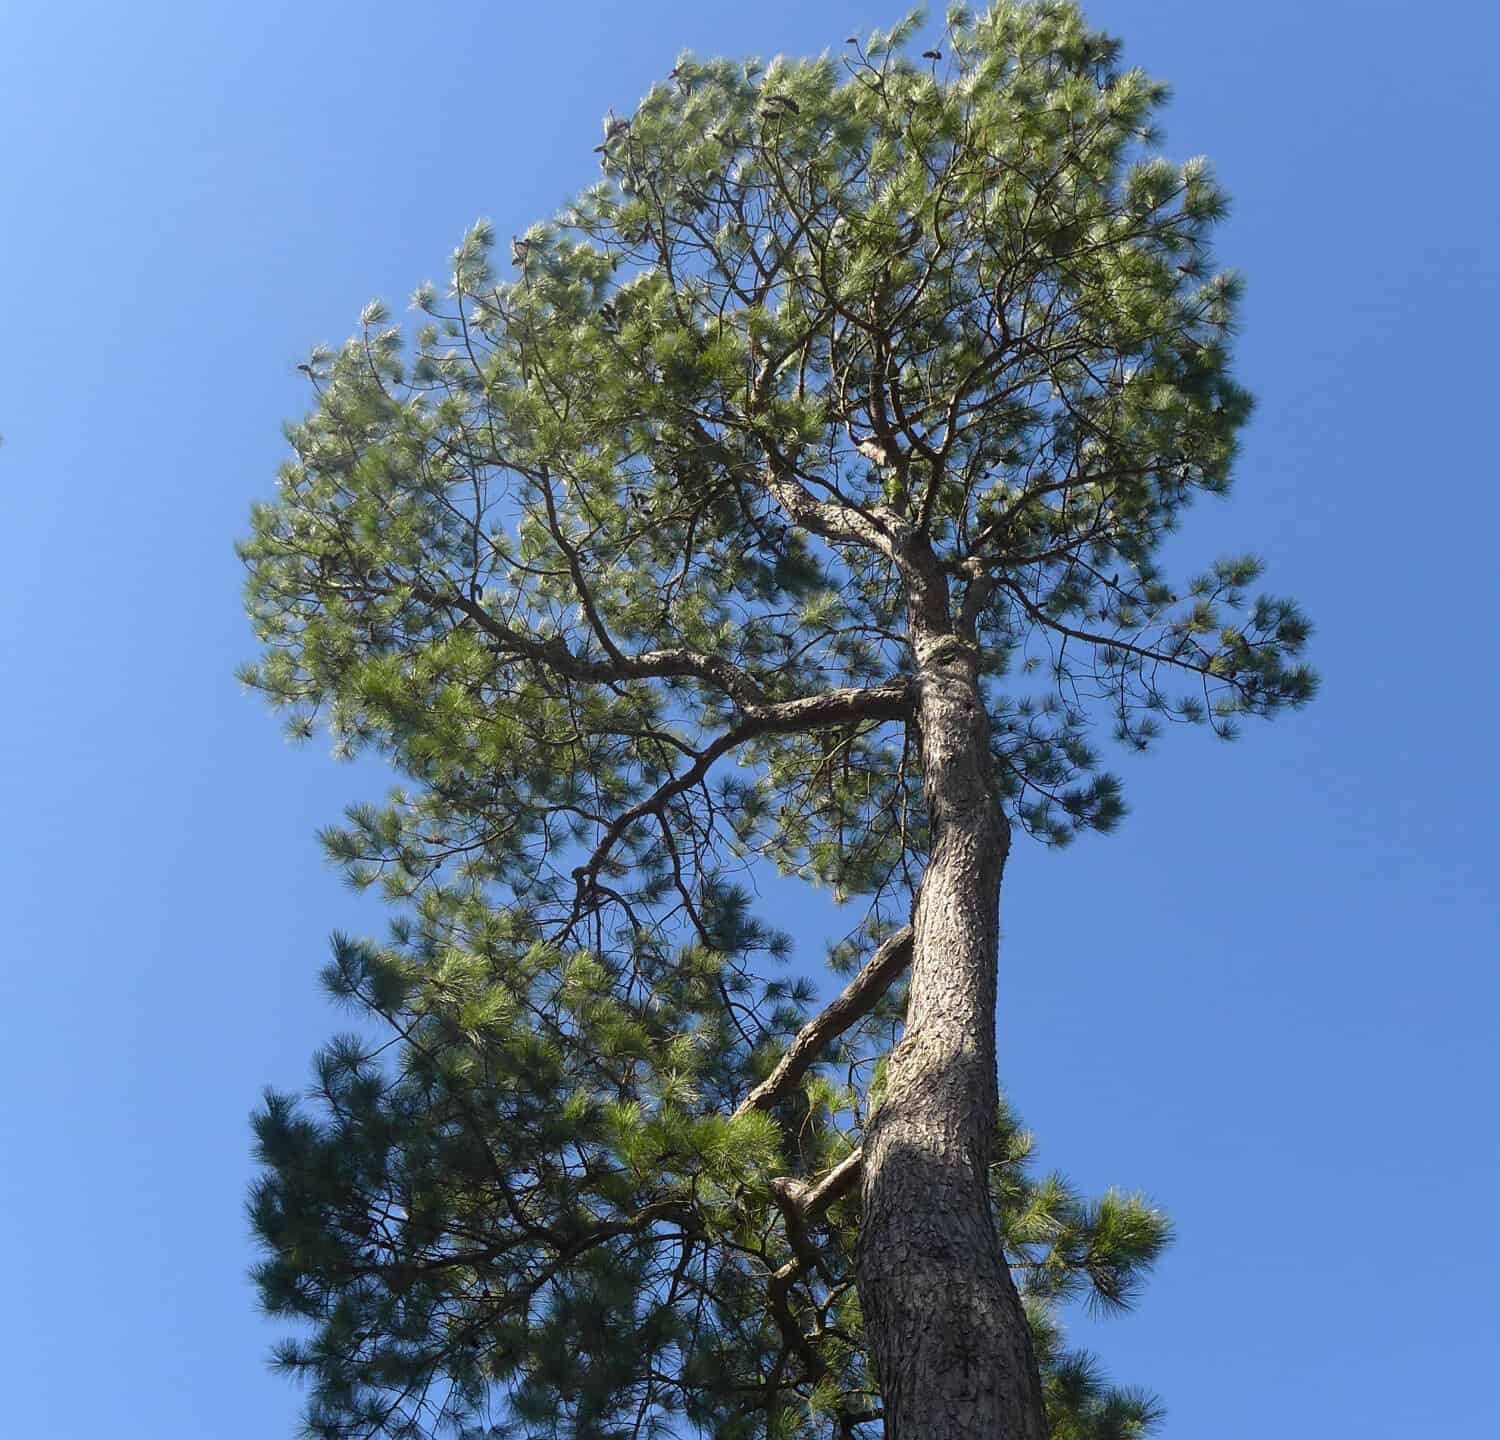 Una suggestiva vista dal basso della conifera Loblolly Pine, Pinus taeda dal sud-est degli Stati Uniti contro un cielo blu